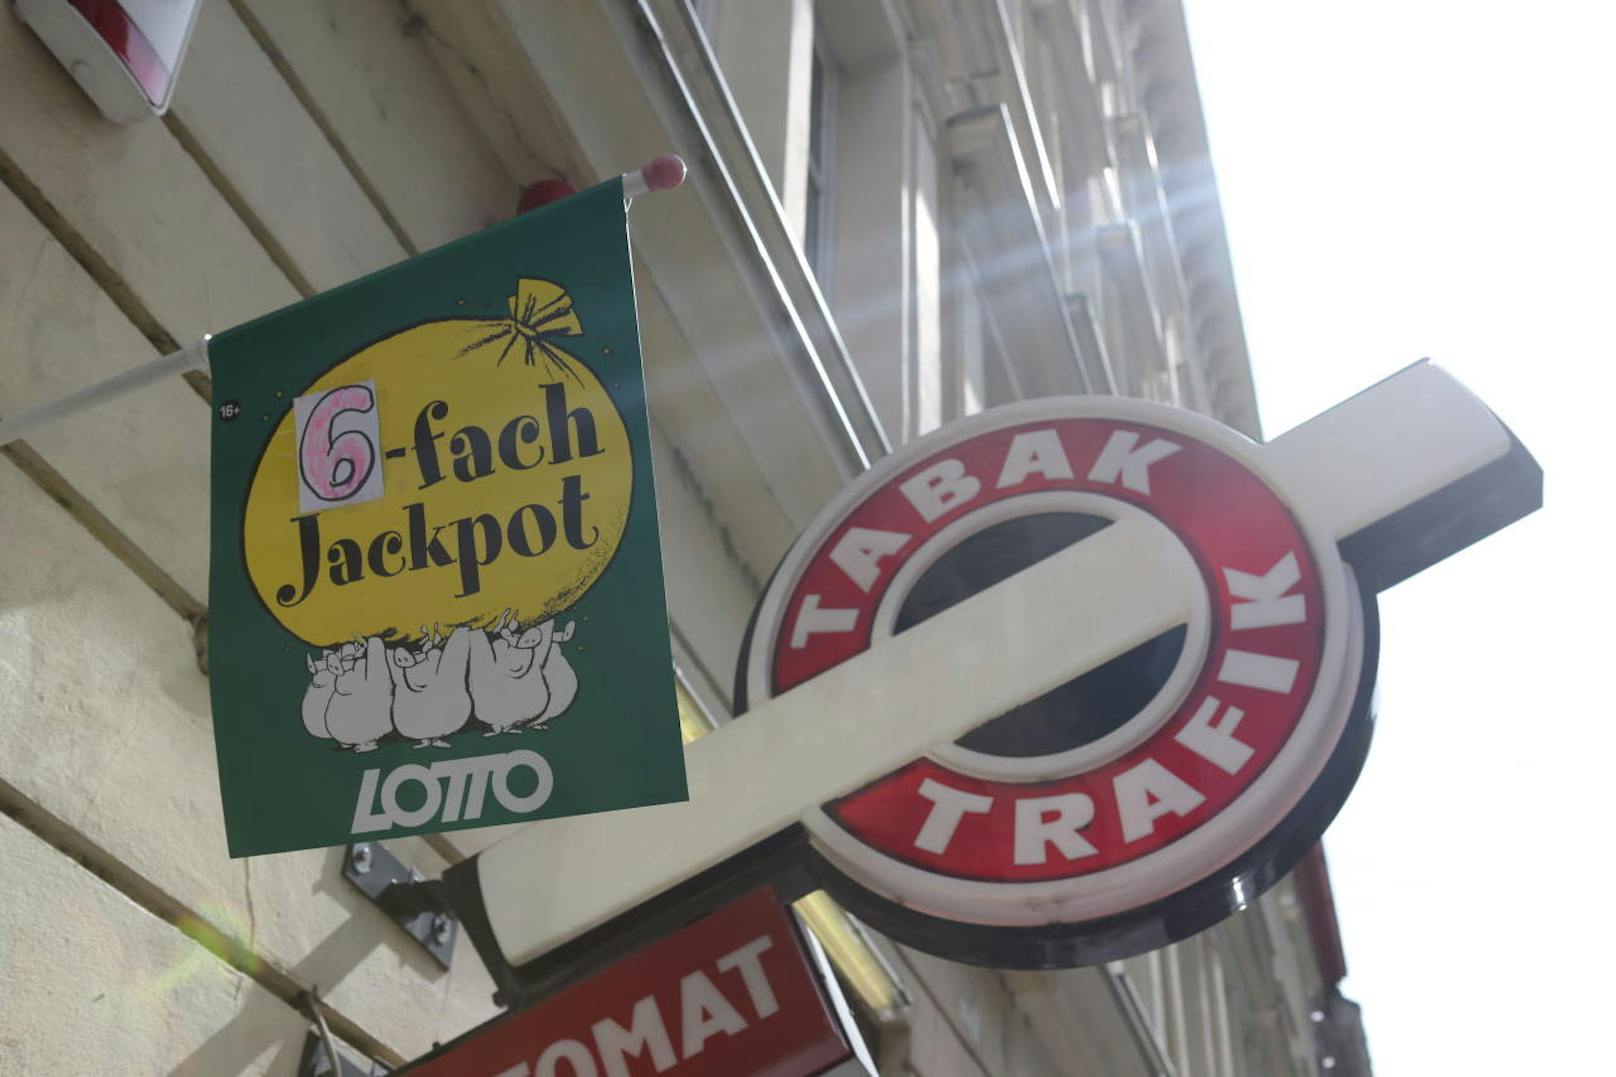 Ein Sechsfach-Jackpot will am Sonntag im Lotto geknackt werden.